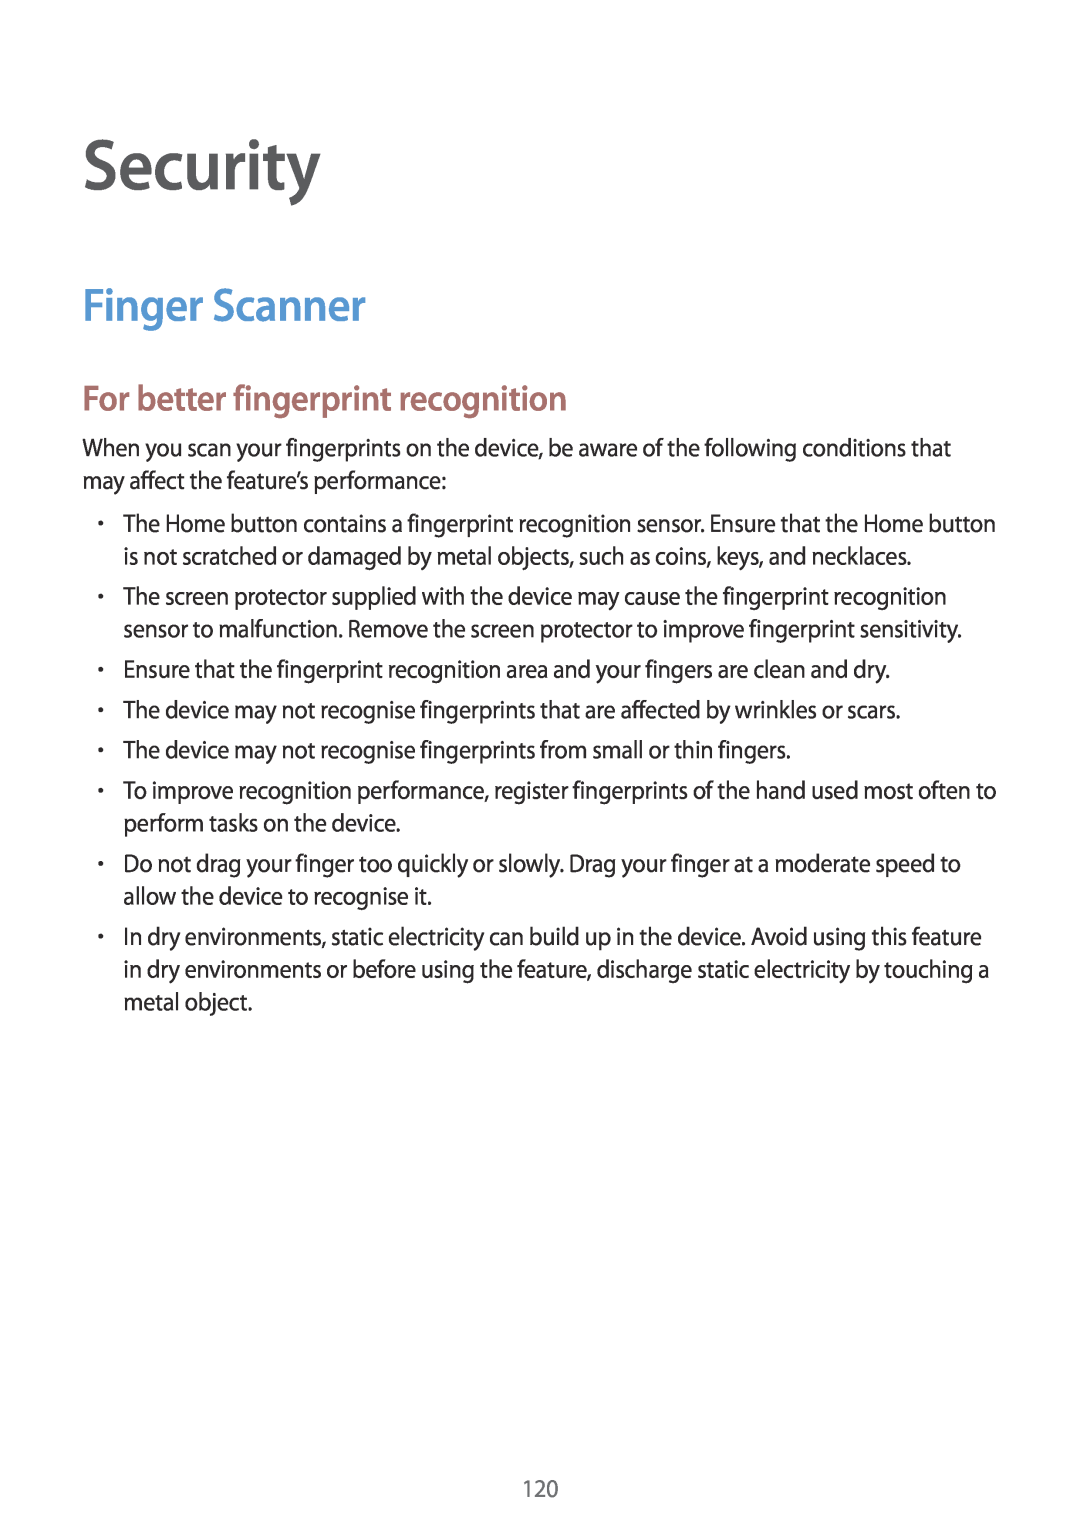 Samsung SM-G901FZKABAL, SM-G901FZKACOS, SM-G901FZDABAL manual Security, Finger Scanner, For better fingerprint recognition 